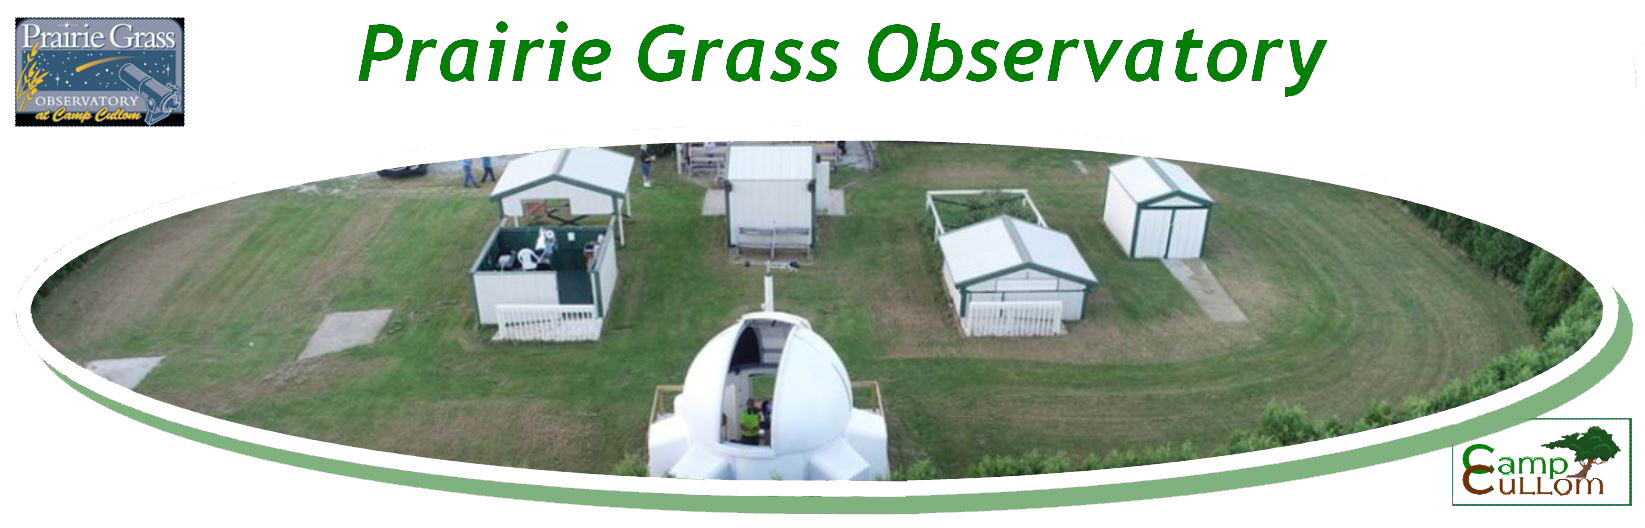 Prairie Grass Observatory Campus